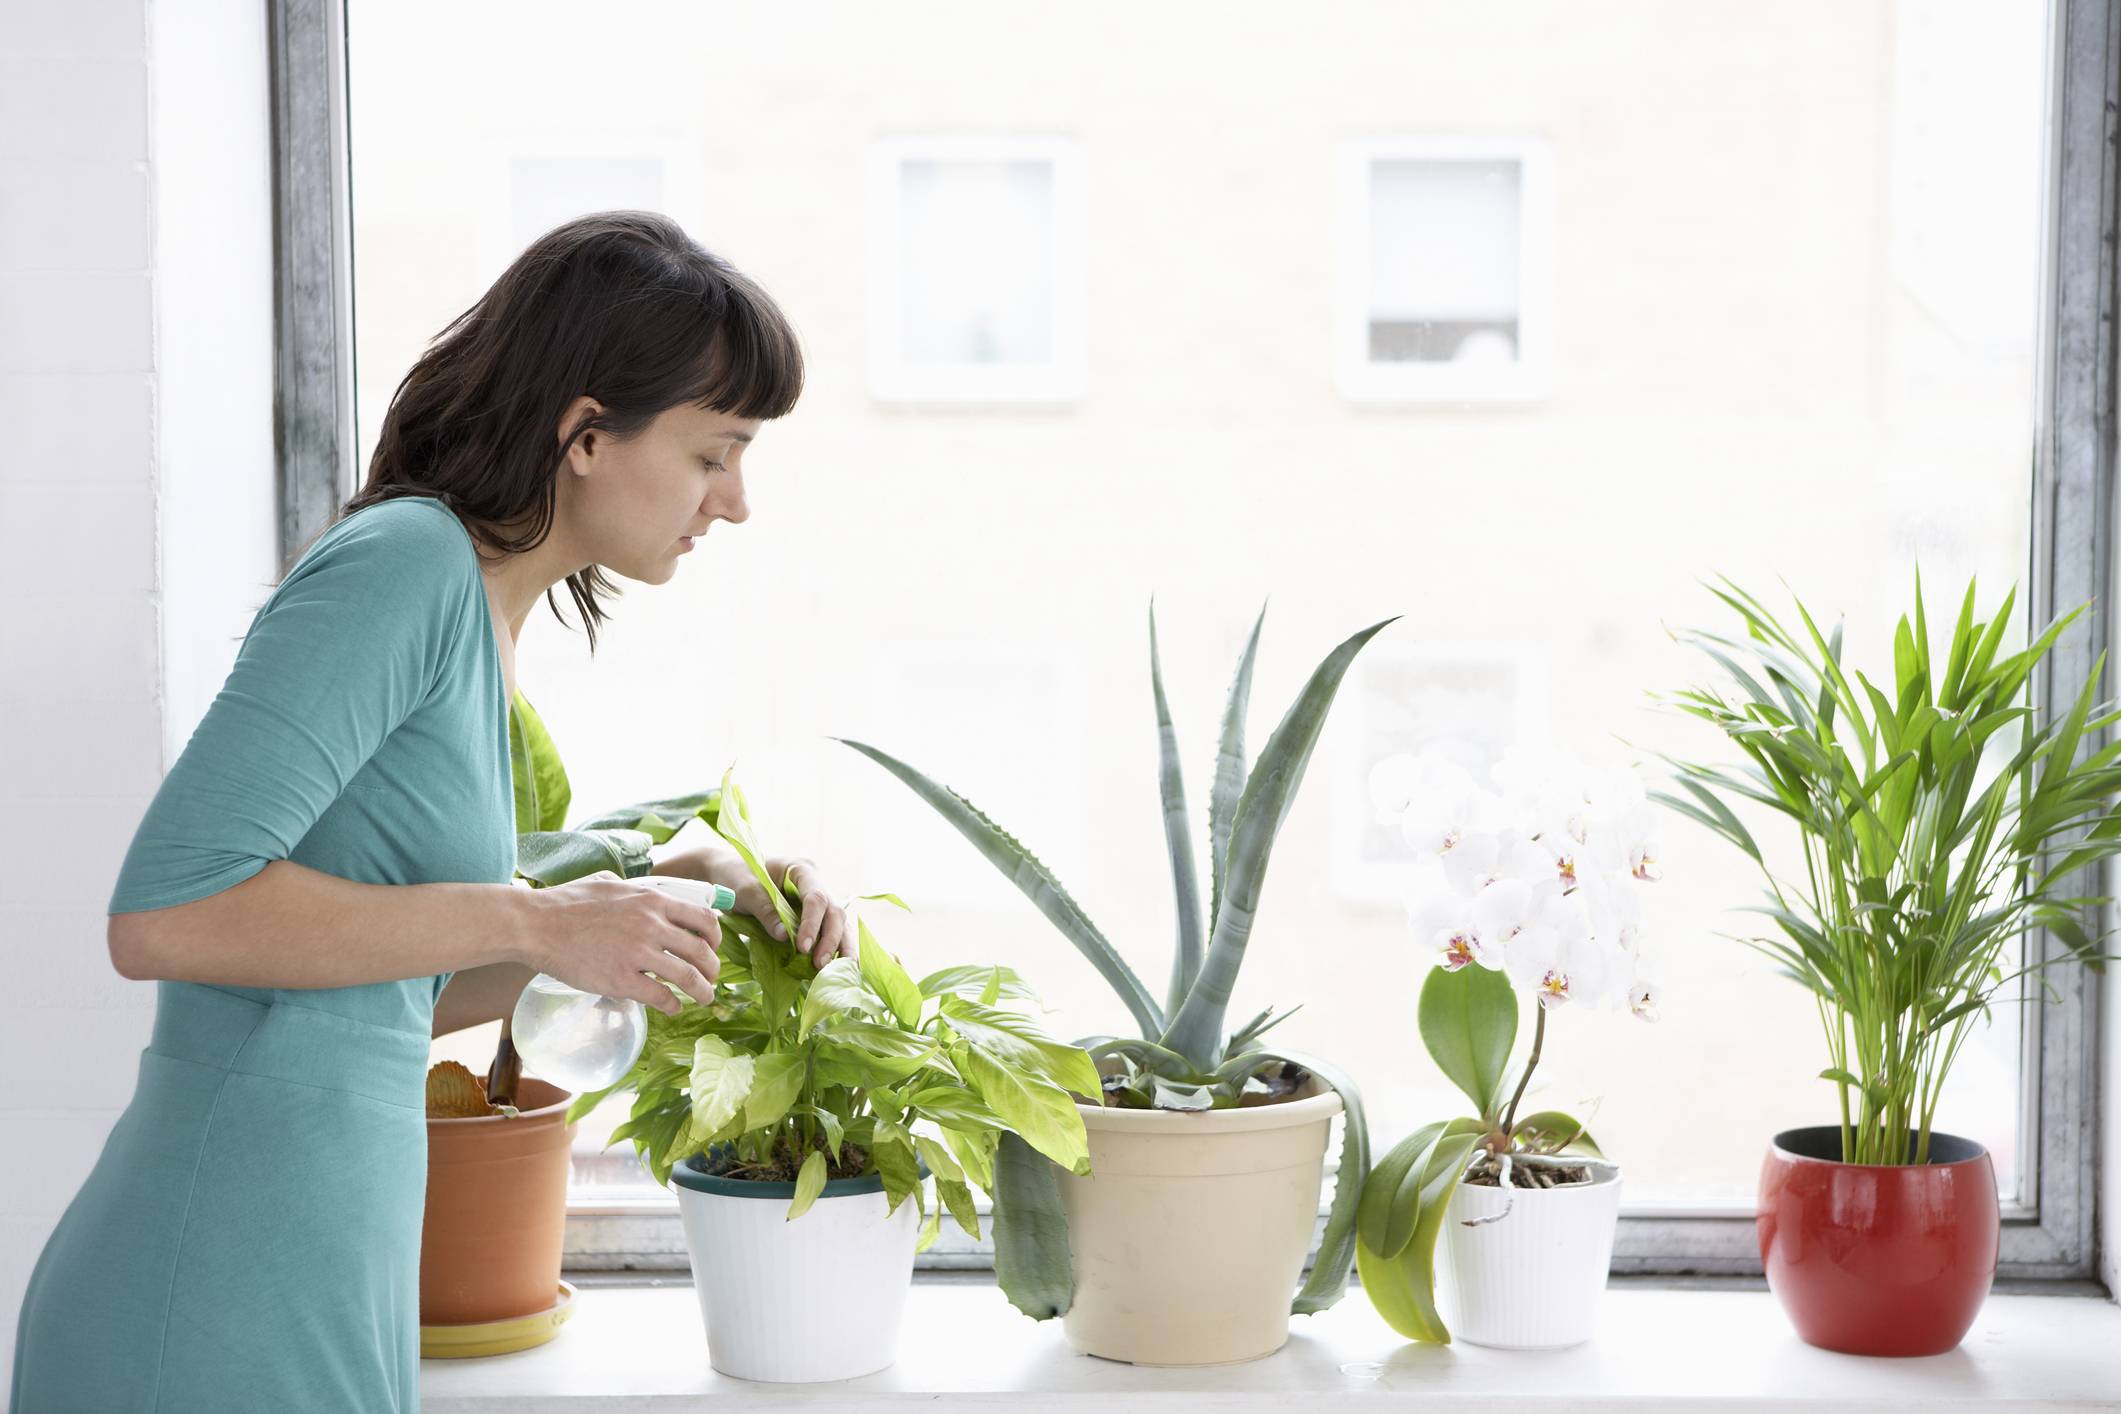 Советы по уходу за комнатными растениями